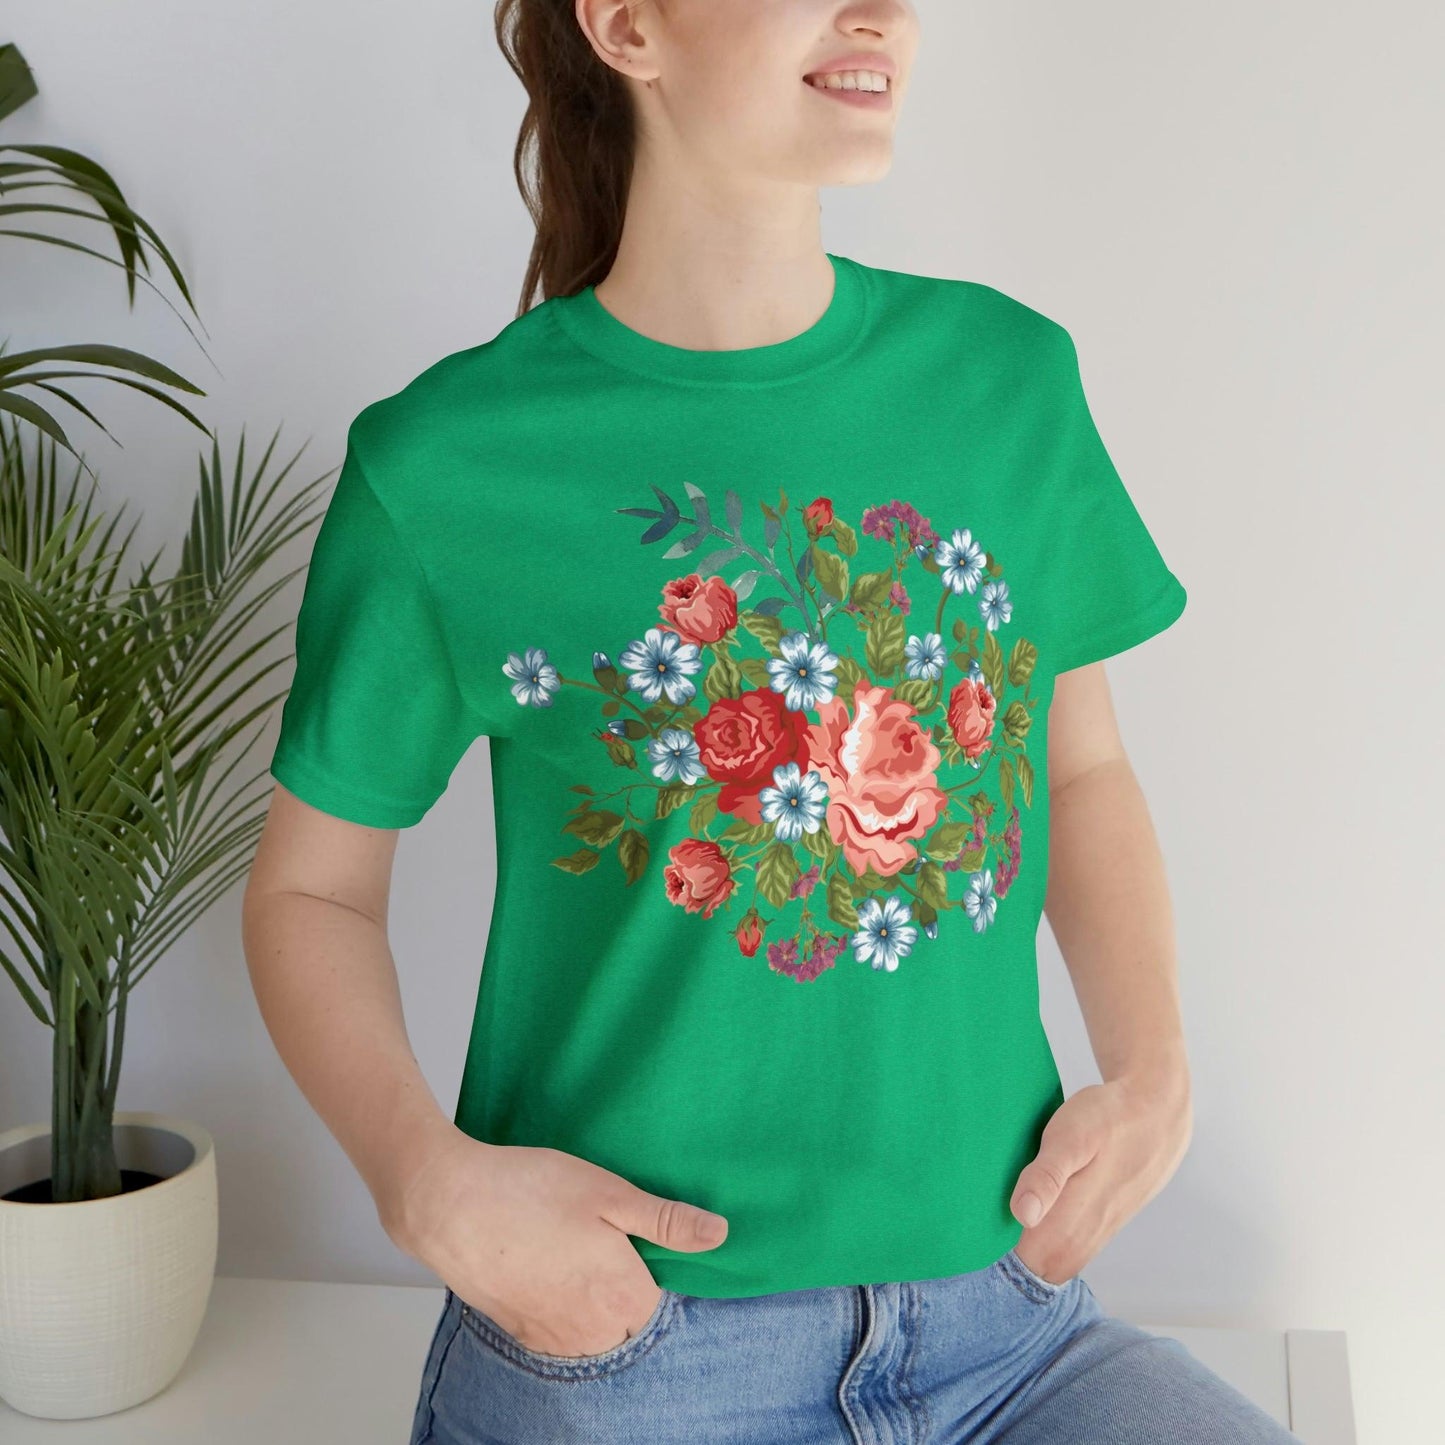 Flower Shirt, Botanical shirt, flower T shirt, floral shirt, wild flowers shirt, birth flower shirt, custom flower shirt, wildflowers shirt, plant lady shirt,  birth flower gift,